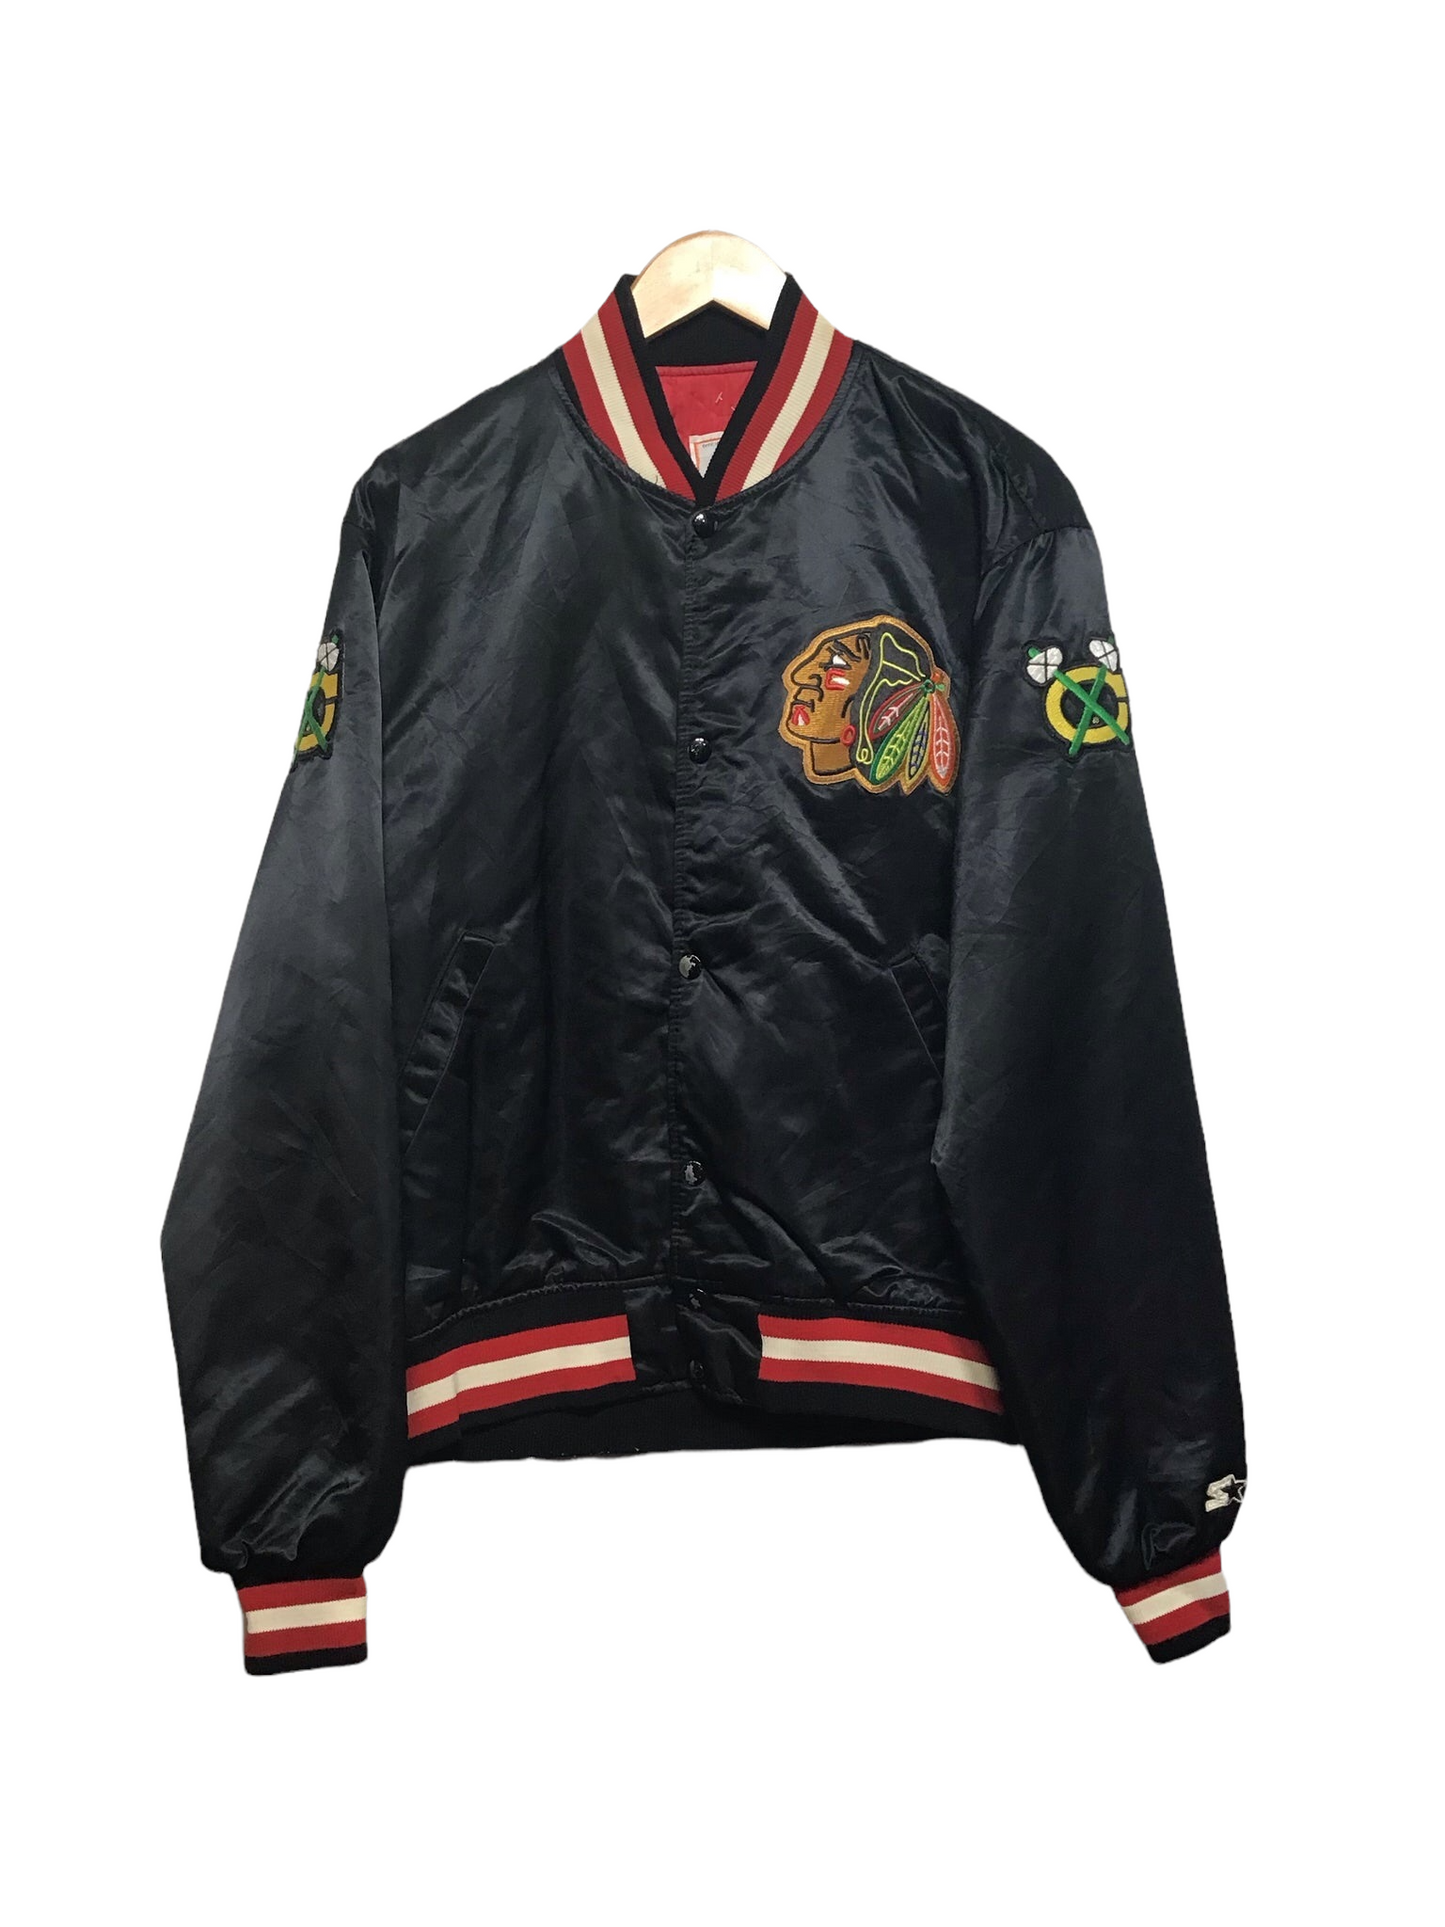 NHL Starter Jacket (Size L)